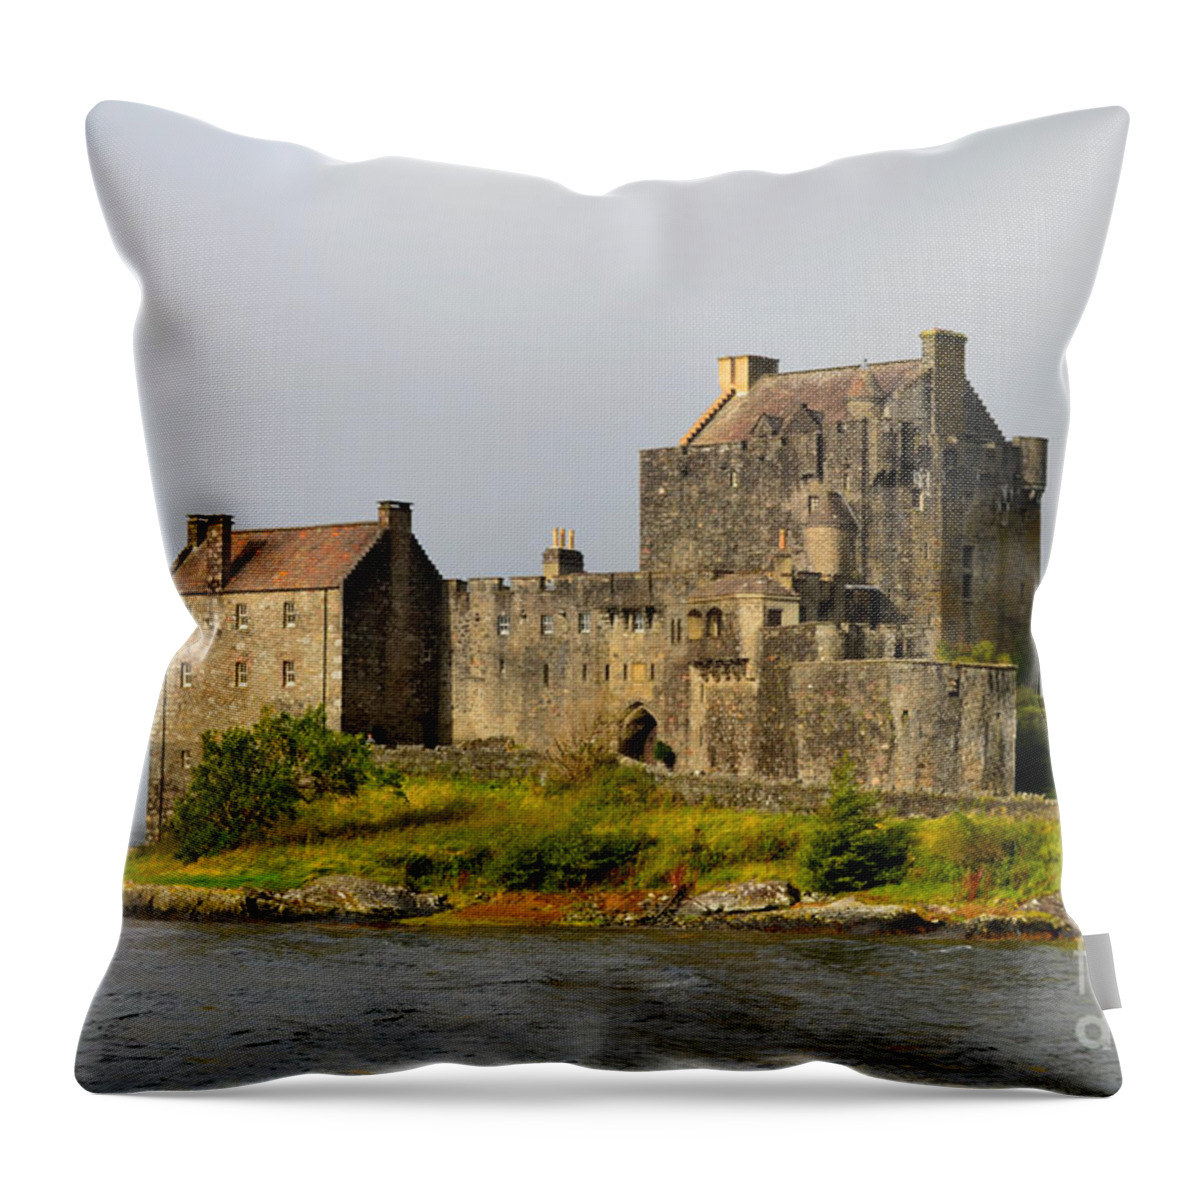 Eilean Donan Throw Pillow featuring the photograph Eilean Donan Castle in Scotland by DejaVu Designs